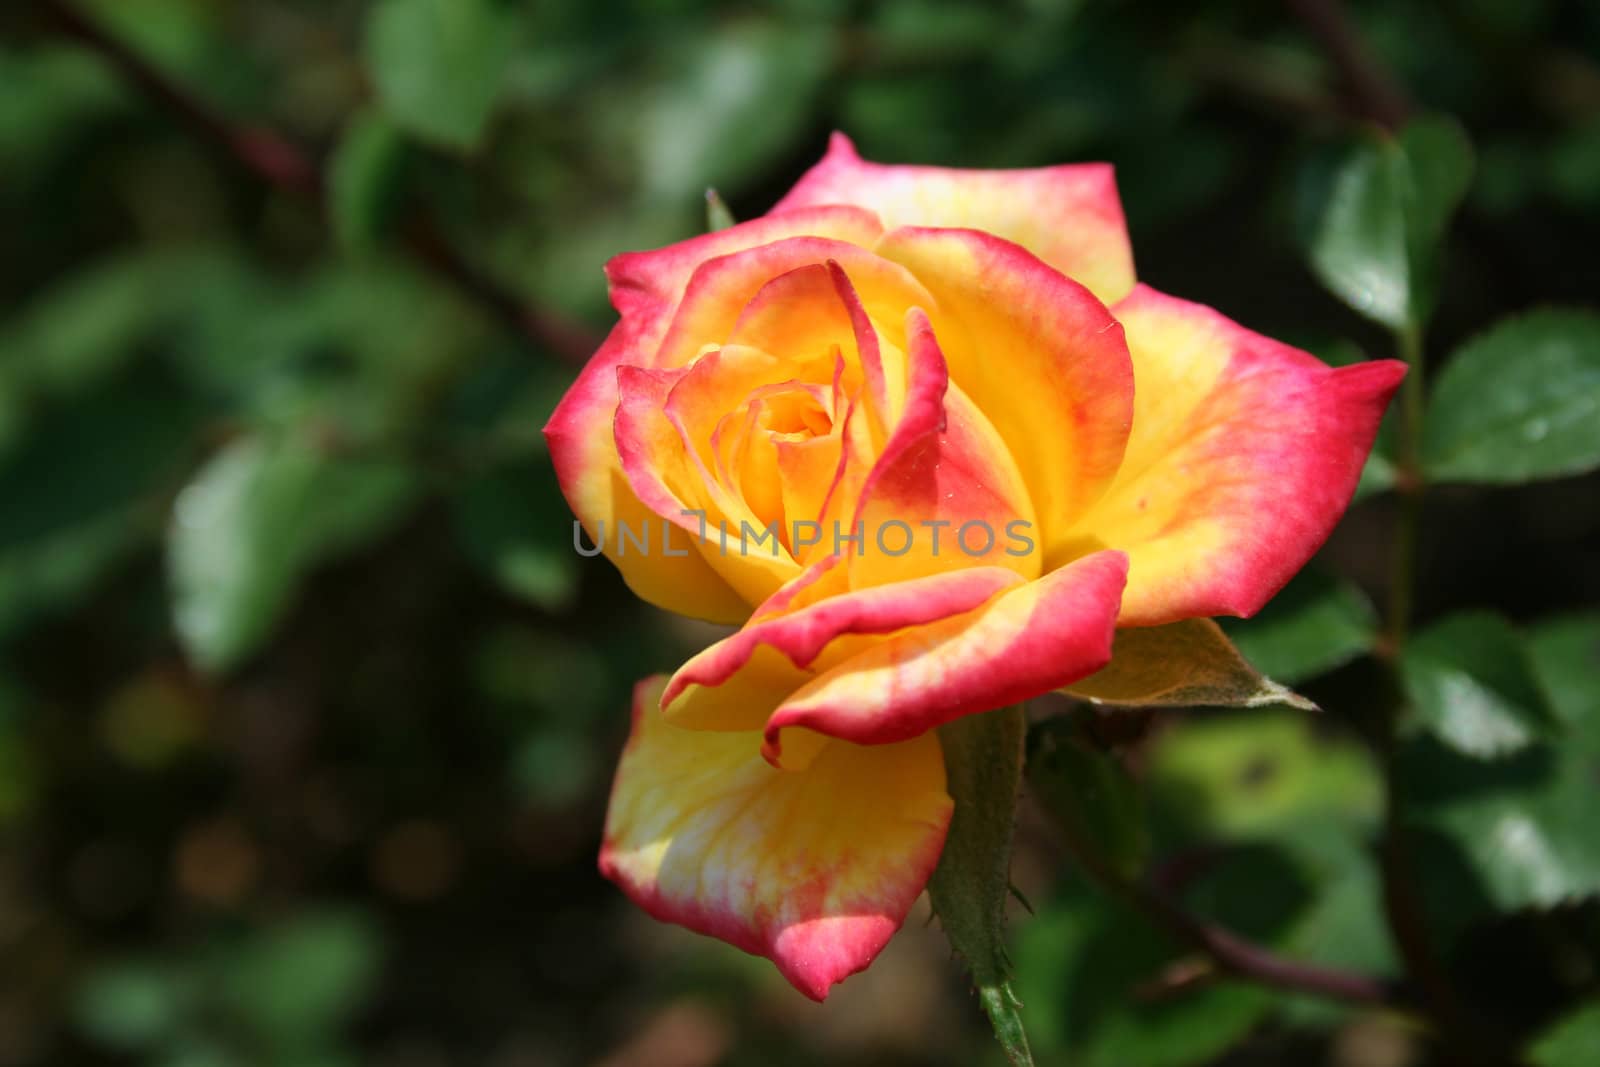 Colored Rose by njnightsky